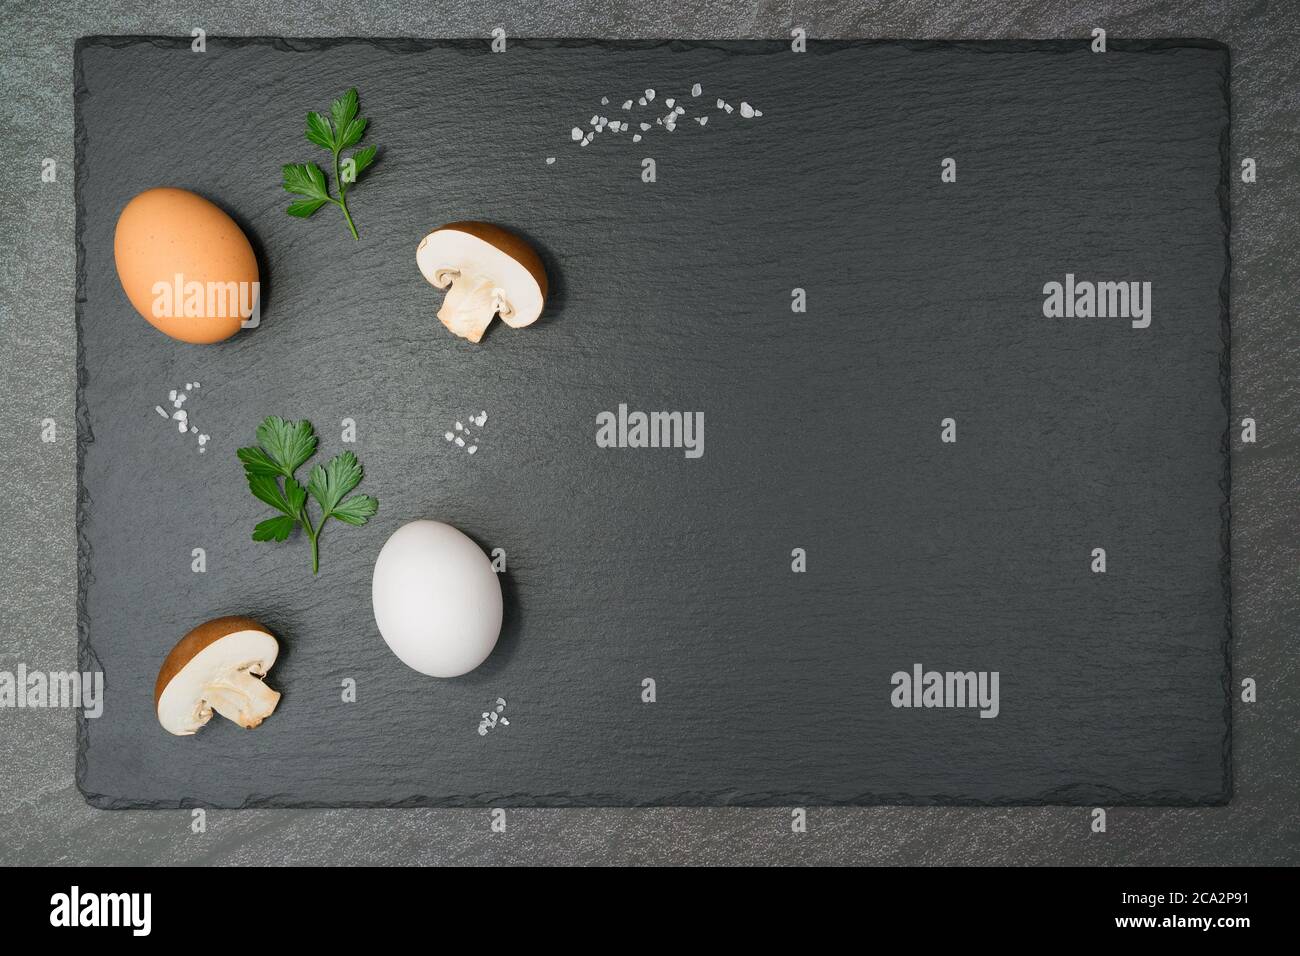 Funghi Omelet ingredienti con due funghi mezzani, un uovo marrone e un uovo bianco, due foglie di prezzemolo e grani grossolani di sale su una lastra di ardesia. Con co Foto Stock